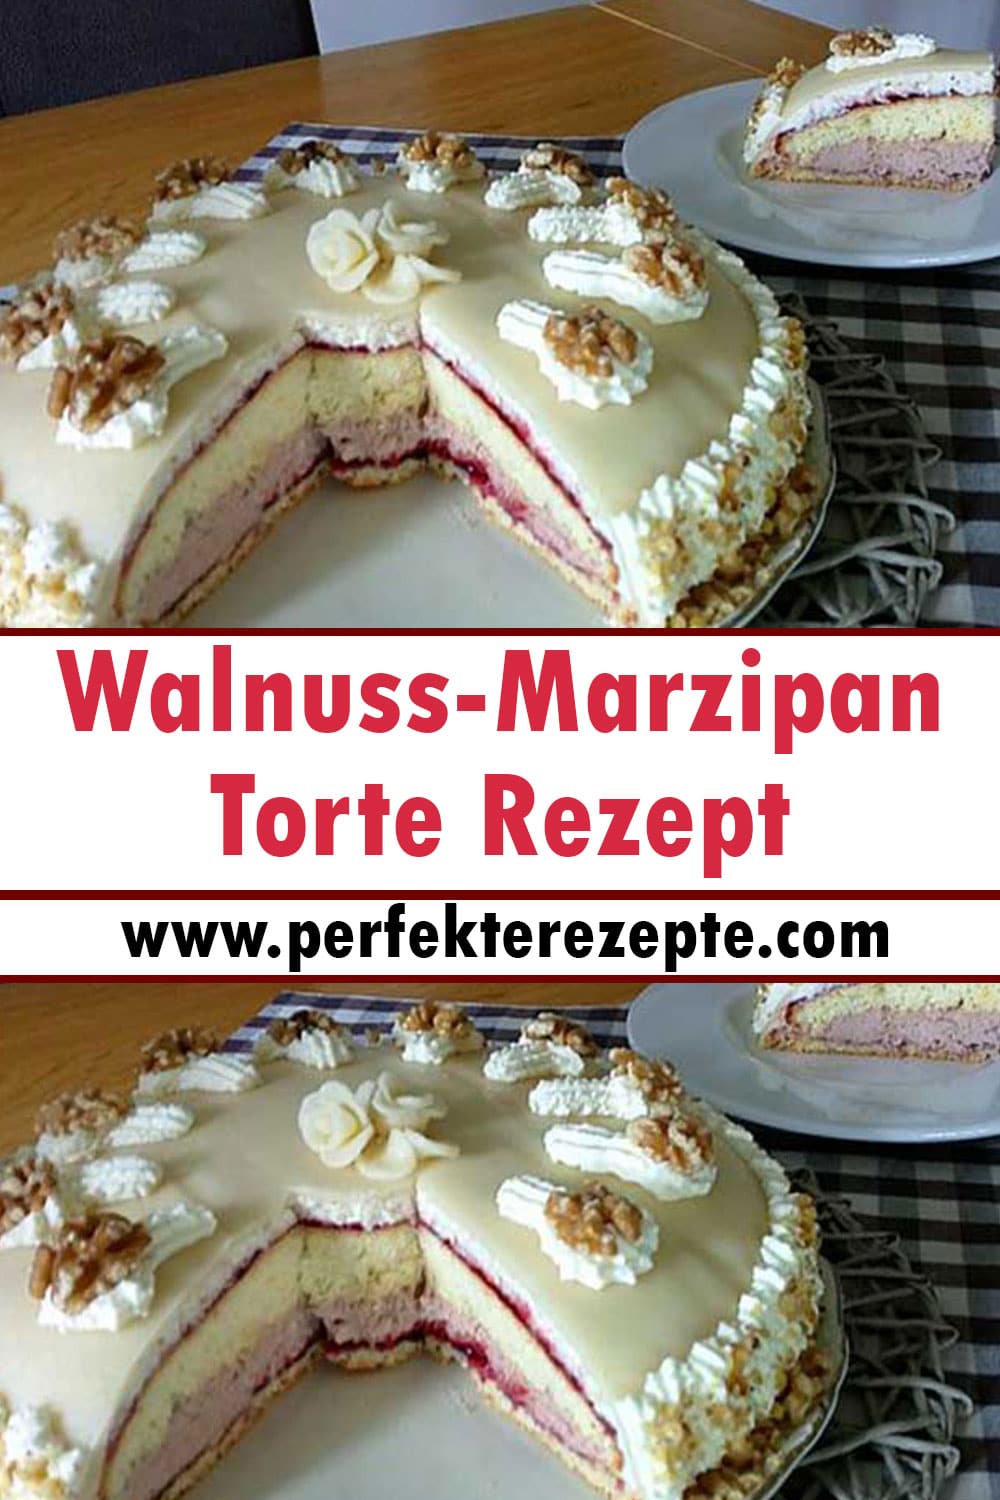 Walnuss-Marzipan Torte Rezept